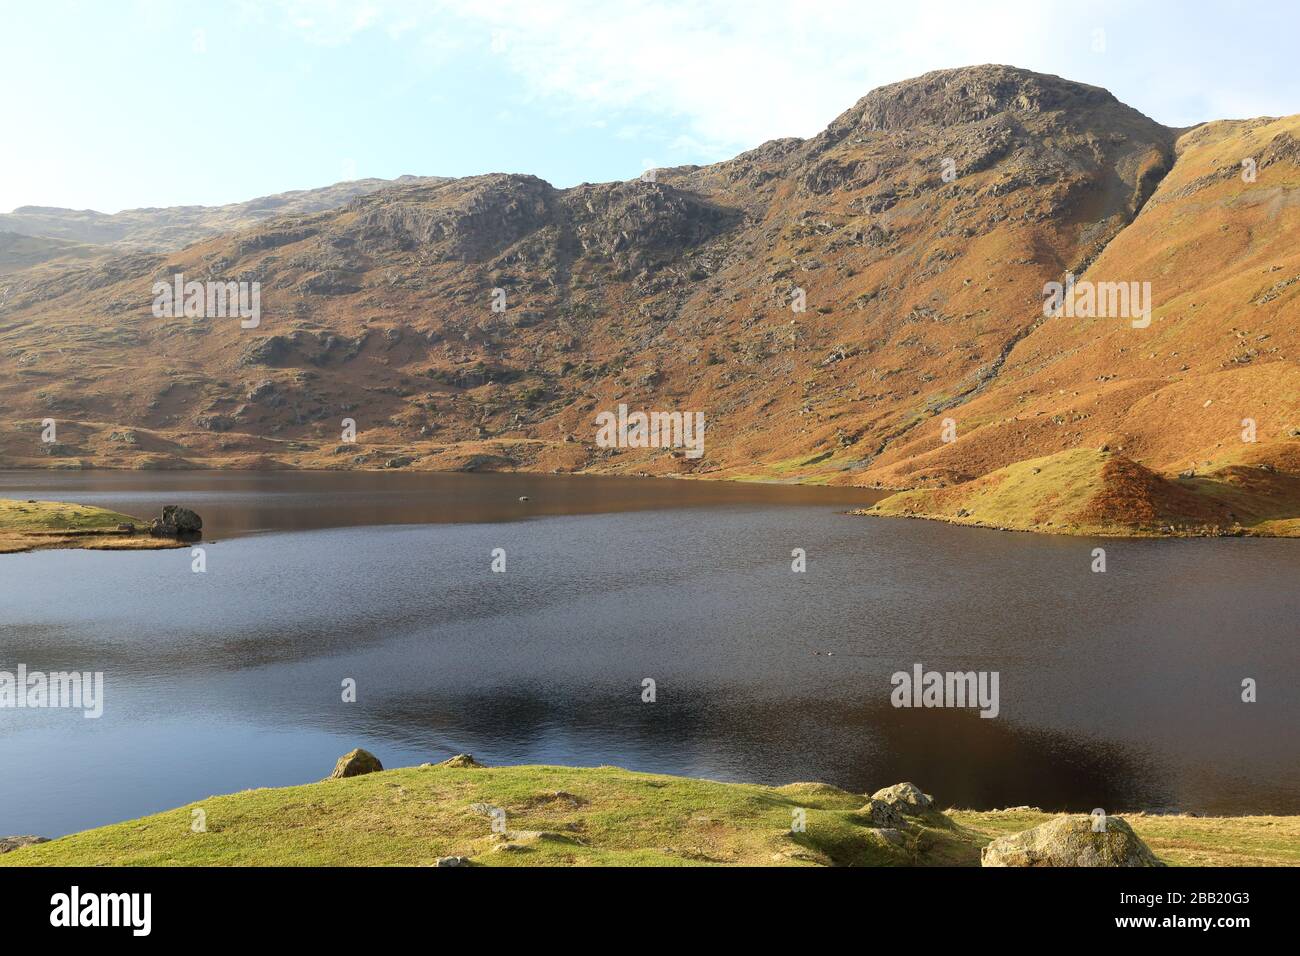 Schöne und friedliche Landschaft des Easedale Tarn im Cumbrian Fells des Lake District National Park in England. Stockfoto